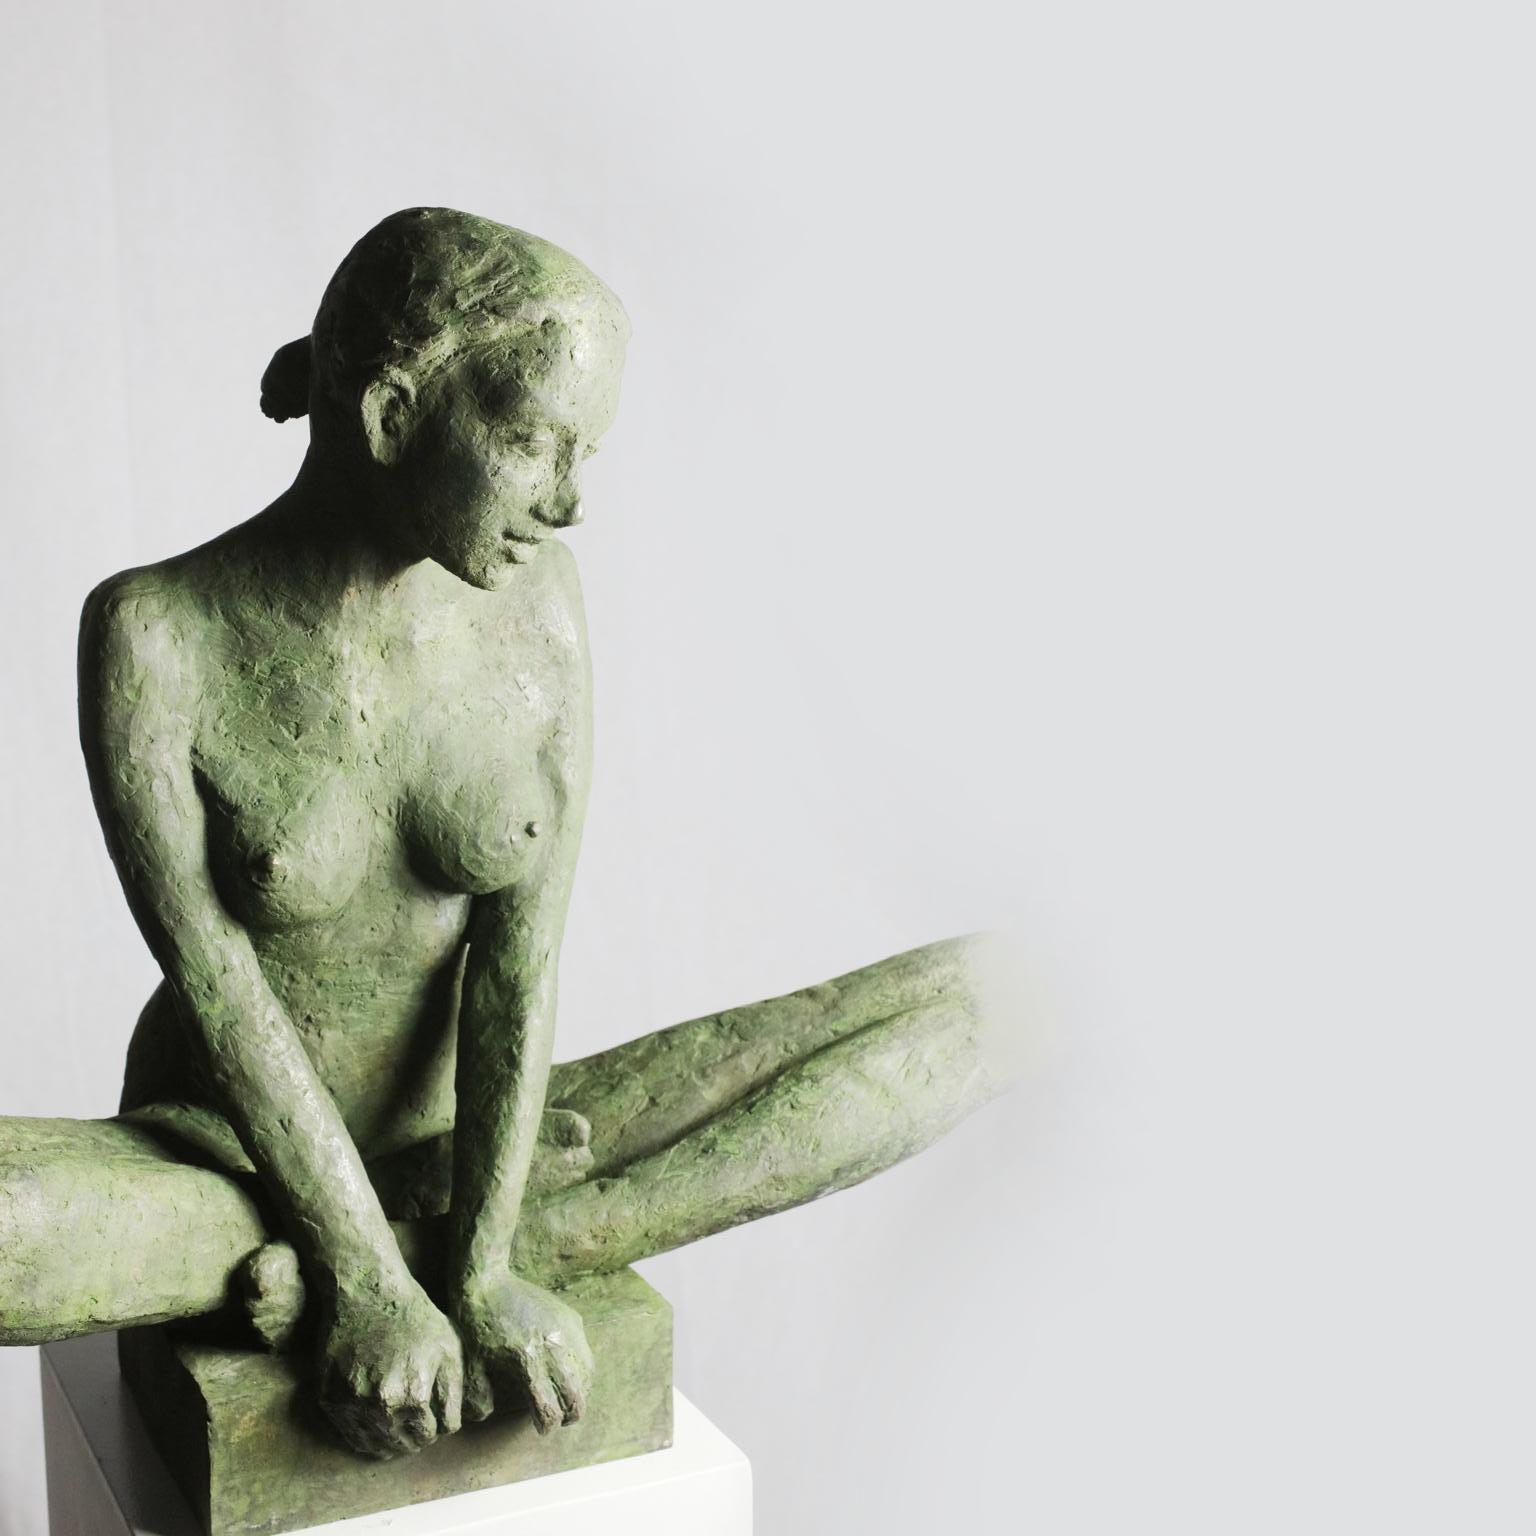 Moyen-sculpture contemporaine de femme nue en bronze dans une pose méditative - Sculpture de Susanne Kraisser